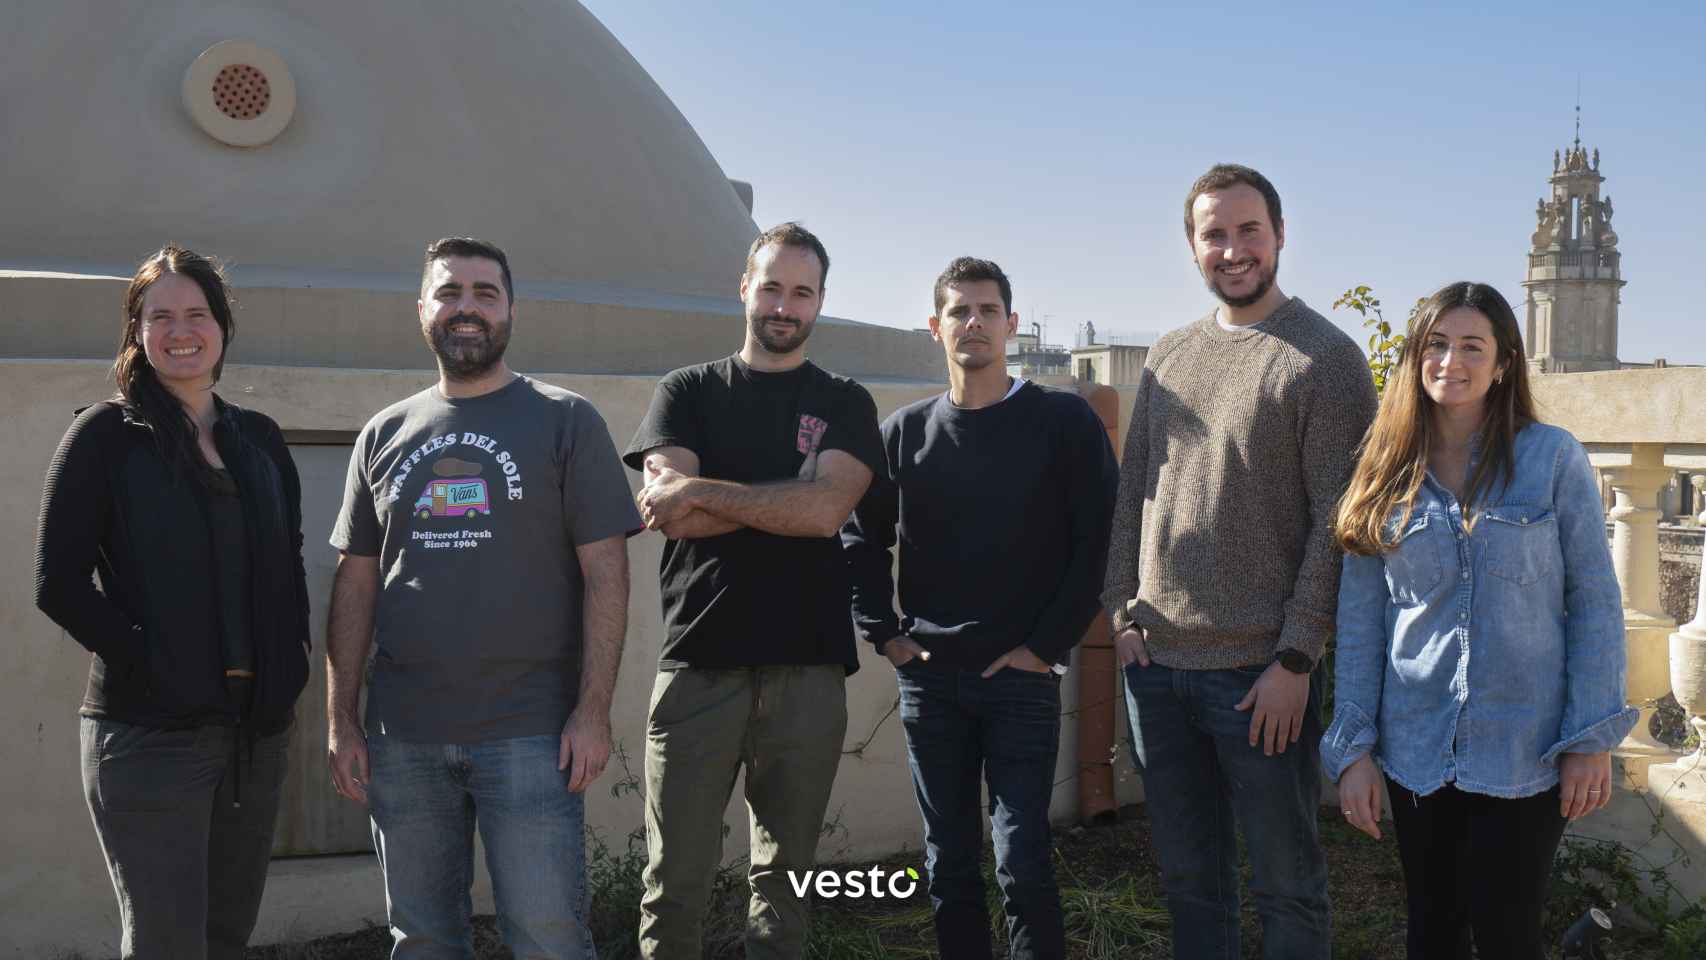 De izquierda a derecha: Sabrina Guzmán, CPO; Diego Marquínez, co-CEO; Antonio Román, Head of Marketing; Emilio Soca, Tech Lead; André Caçador, Founder & co-CEO; Denise Cheb, User Researcher.